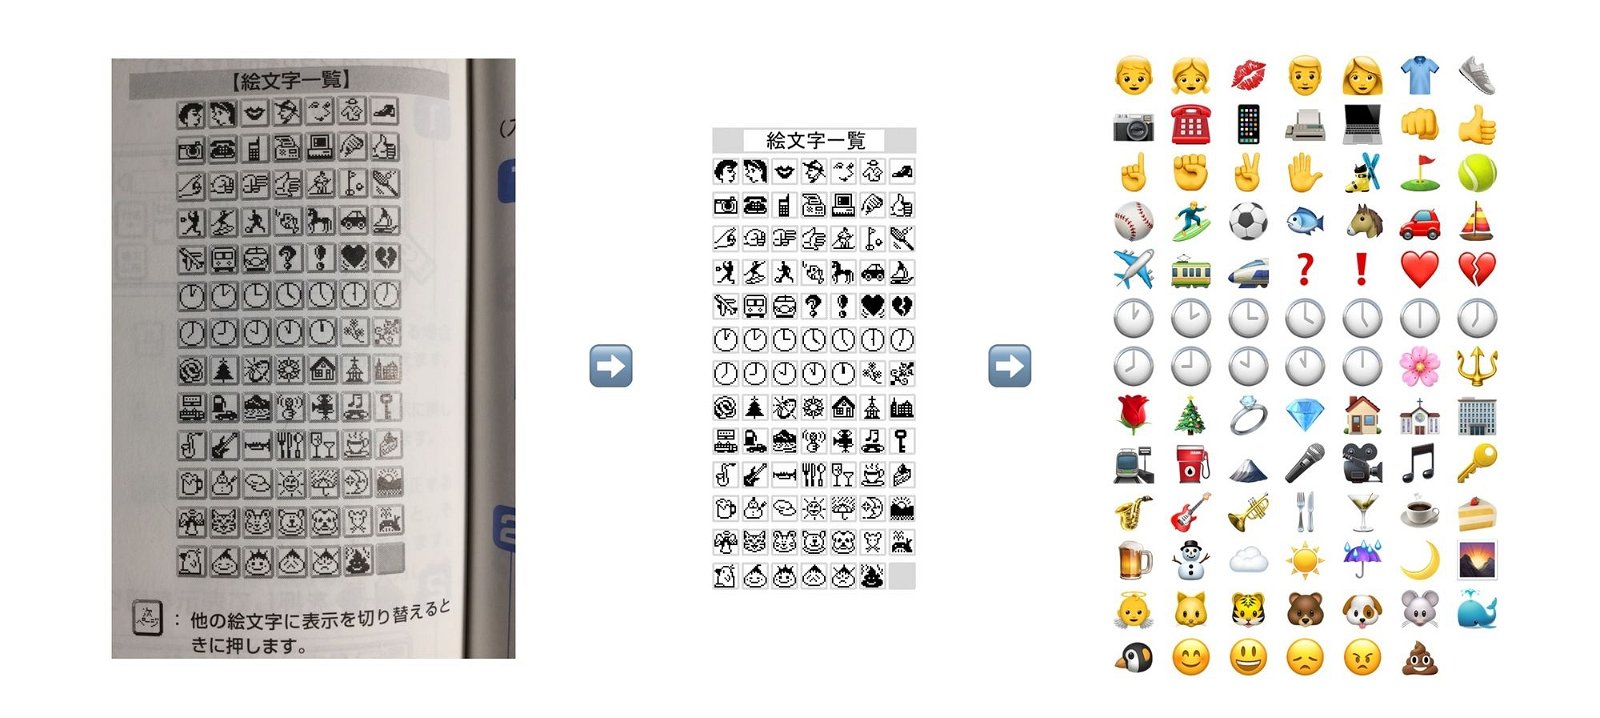 Estos son los emojis más antiguos de la historia, y así han evolucionado